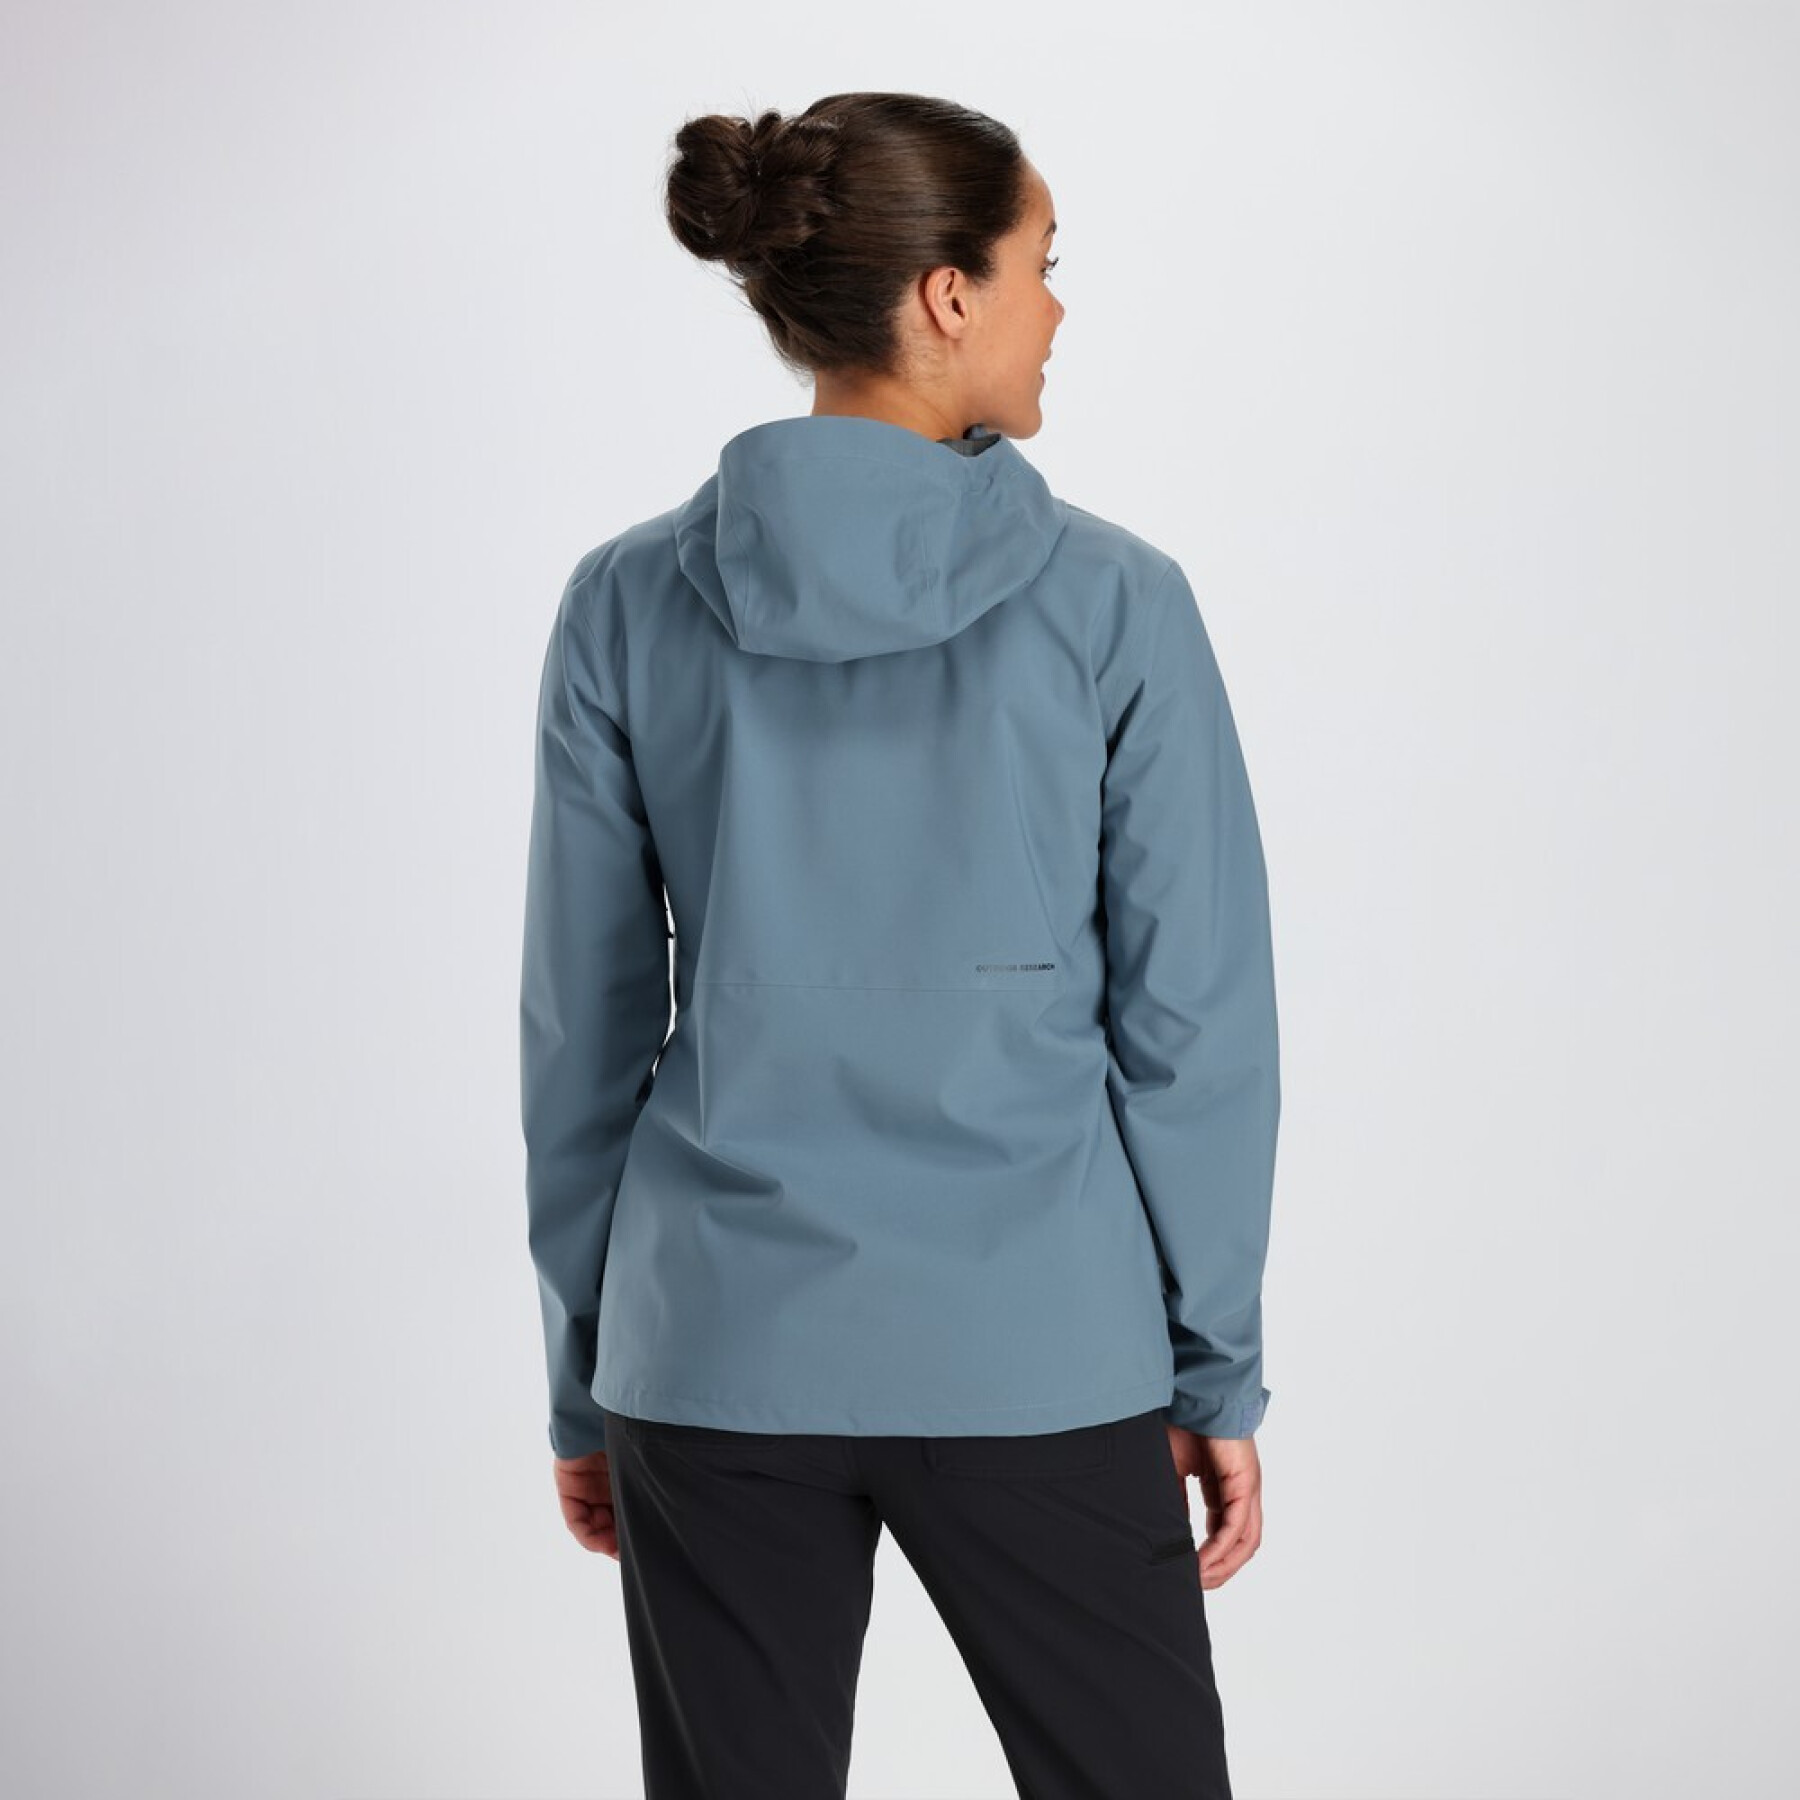 Women's waterproof jacket Outdoor Research Dryline